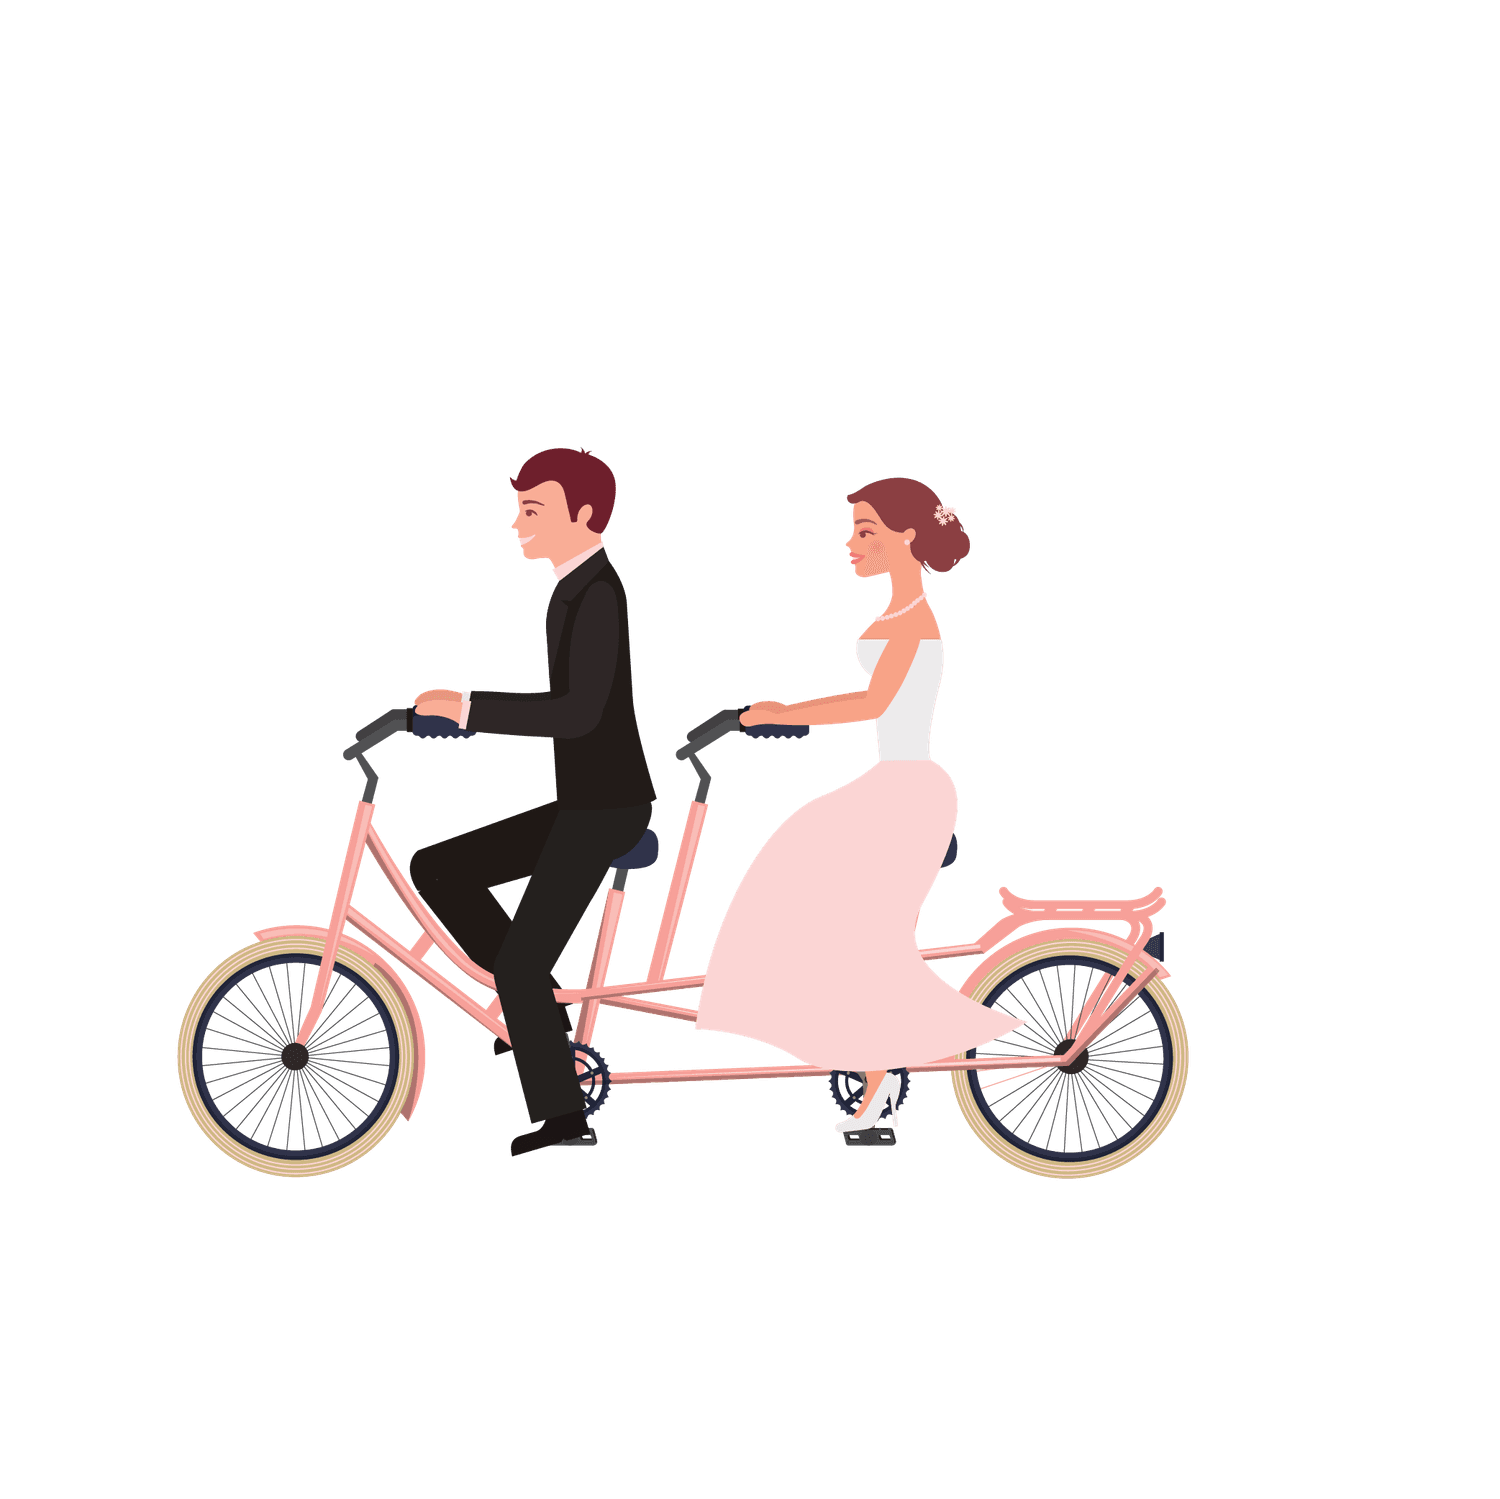 wedding couple with wedding elements illustration